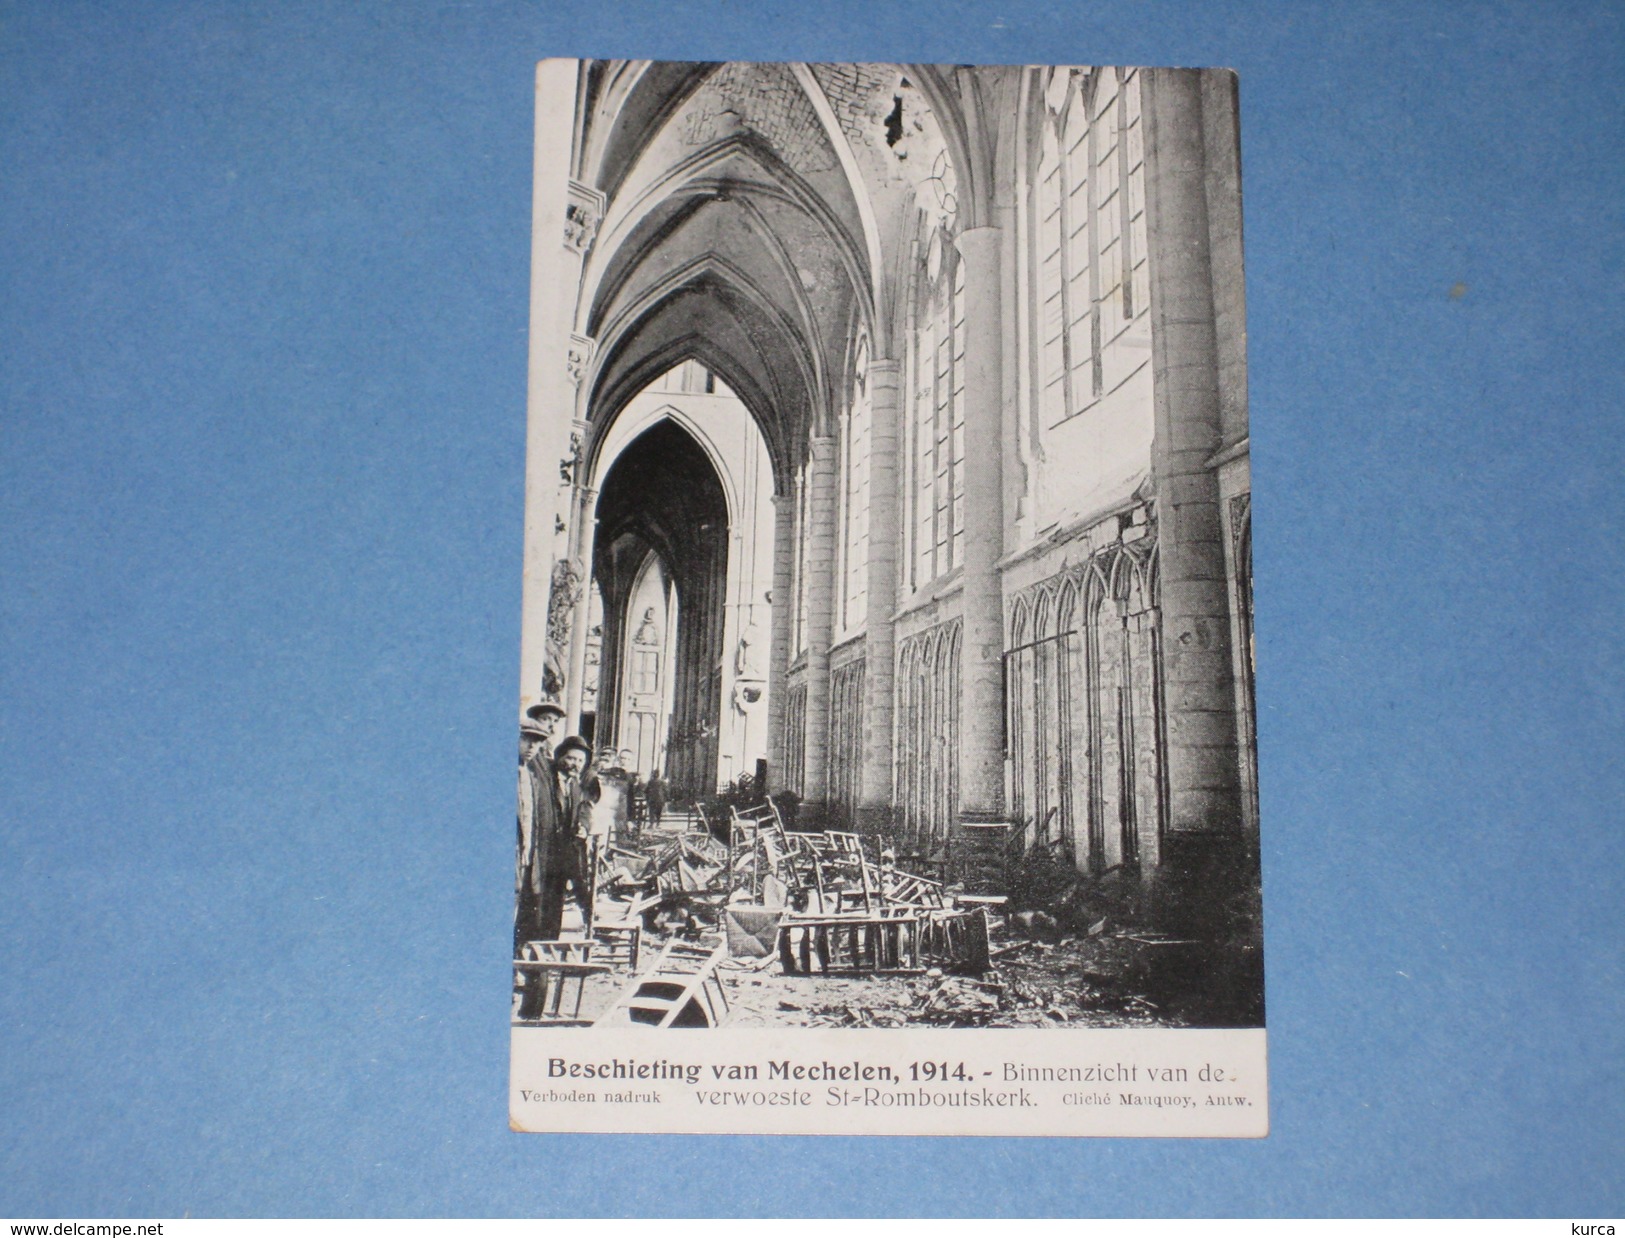 MECHELEN Beschieting 1914 St Romboutskerk - Mechelen